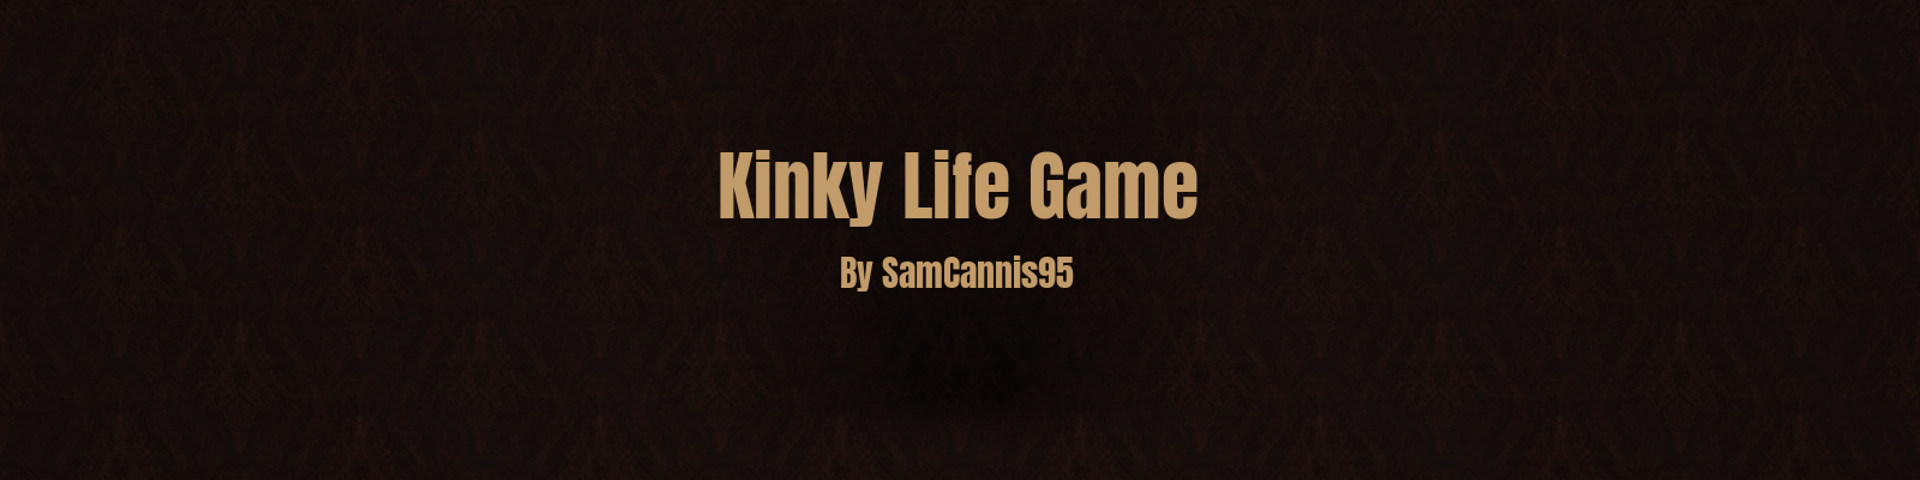 Kinky Life Game poster